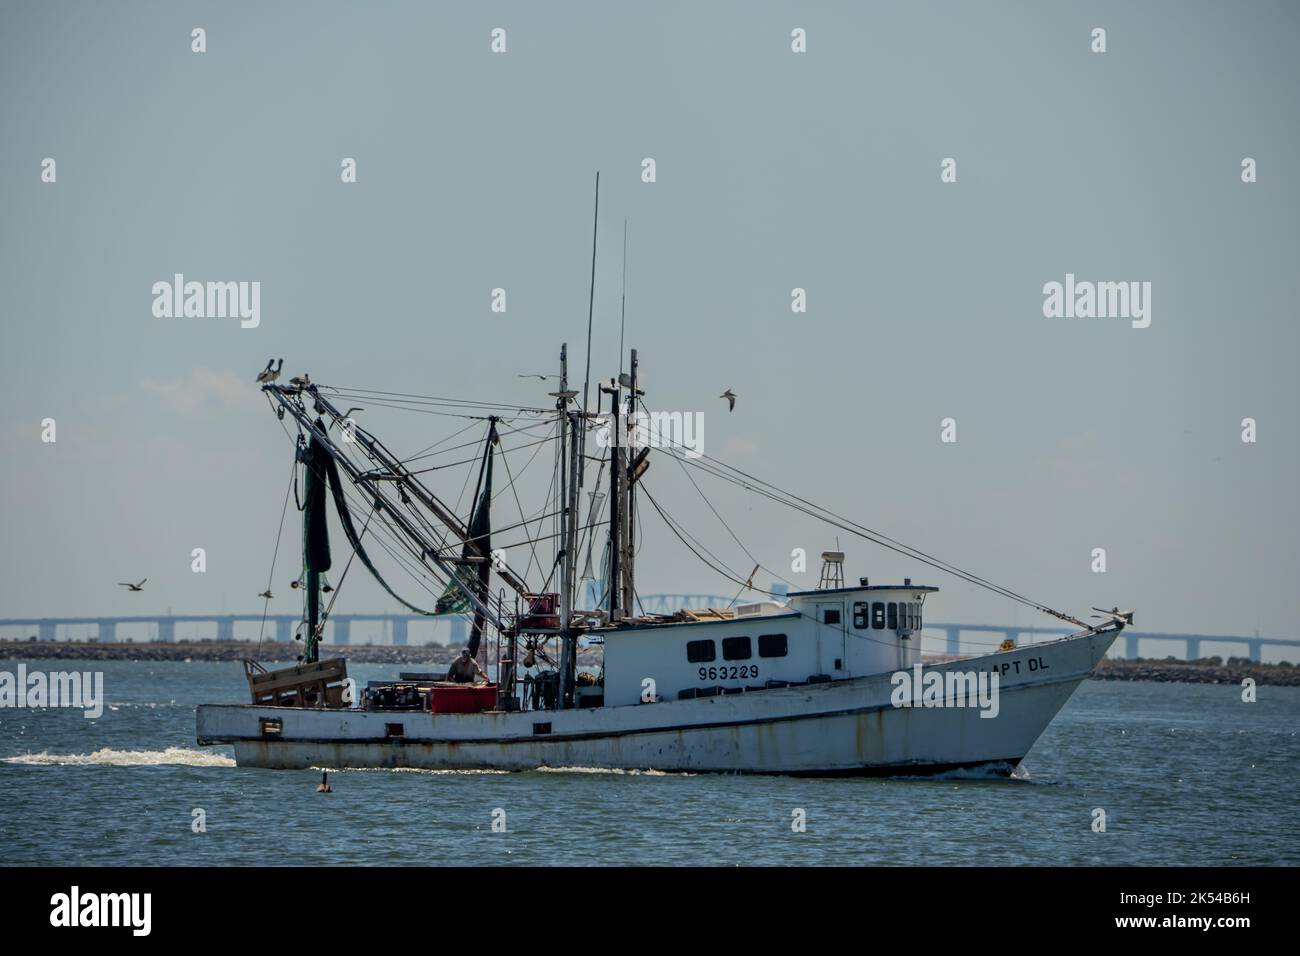 shrimp fishing boat passing by near teas city Stock Photo